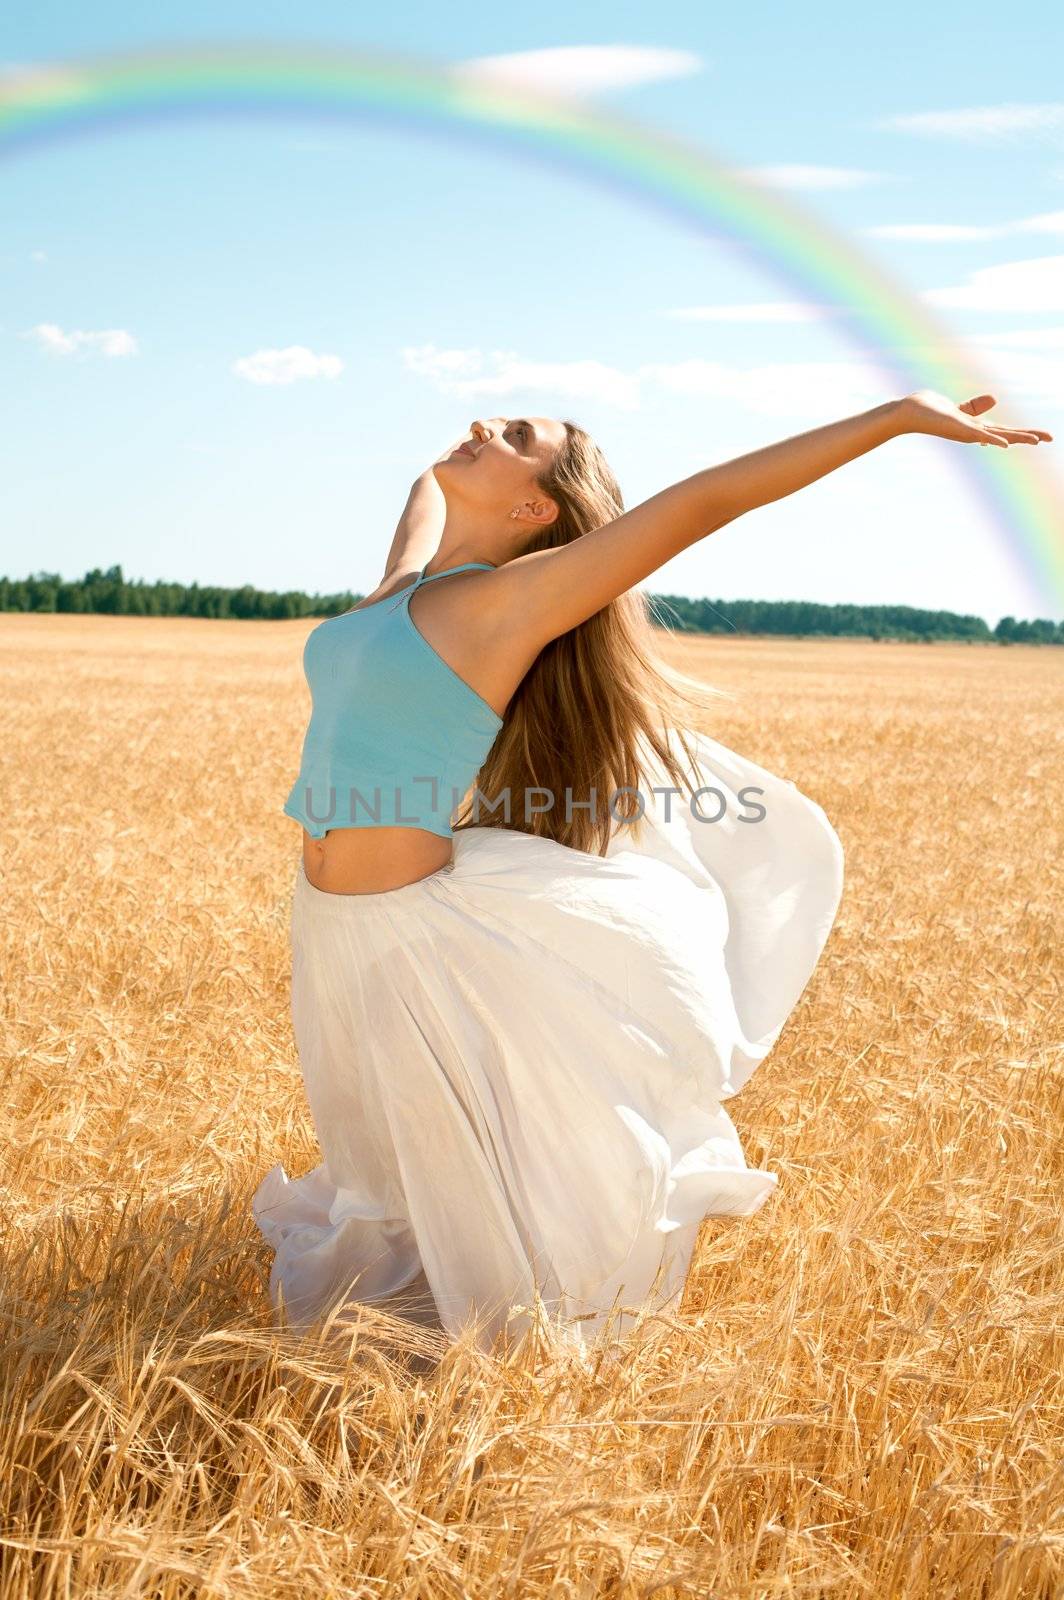 fresh wind and big rainbow by dolgachov